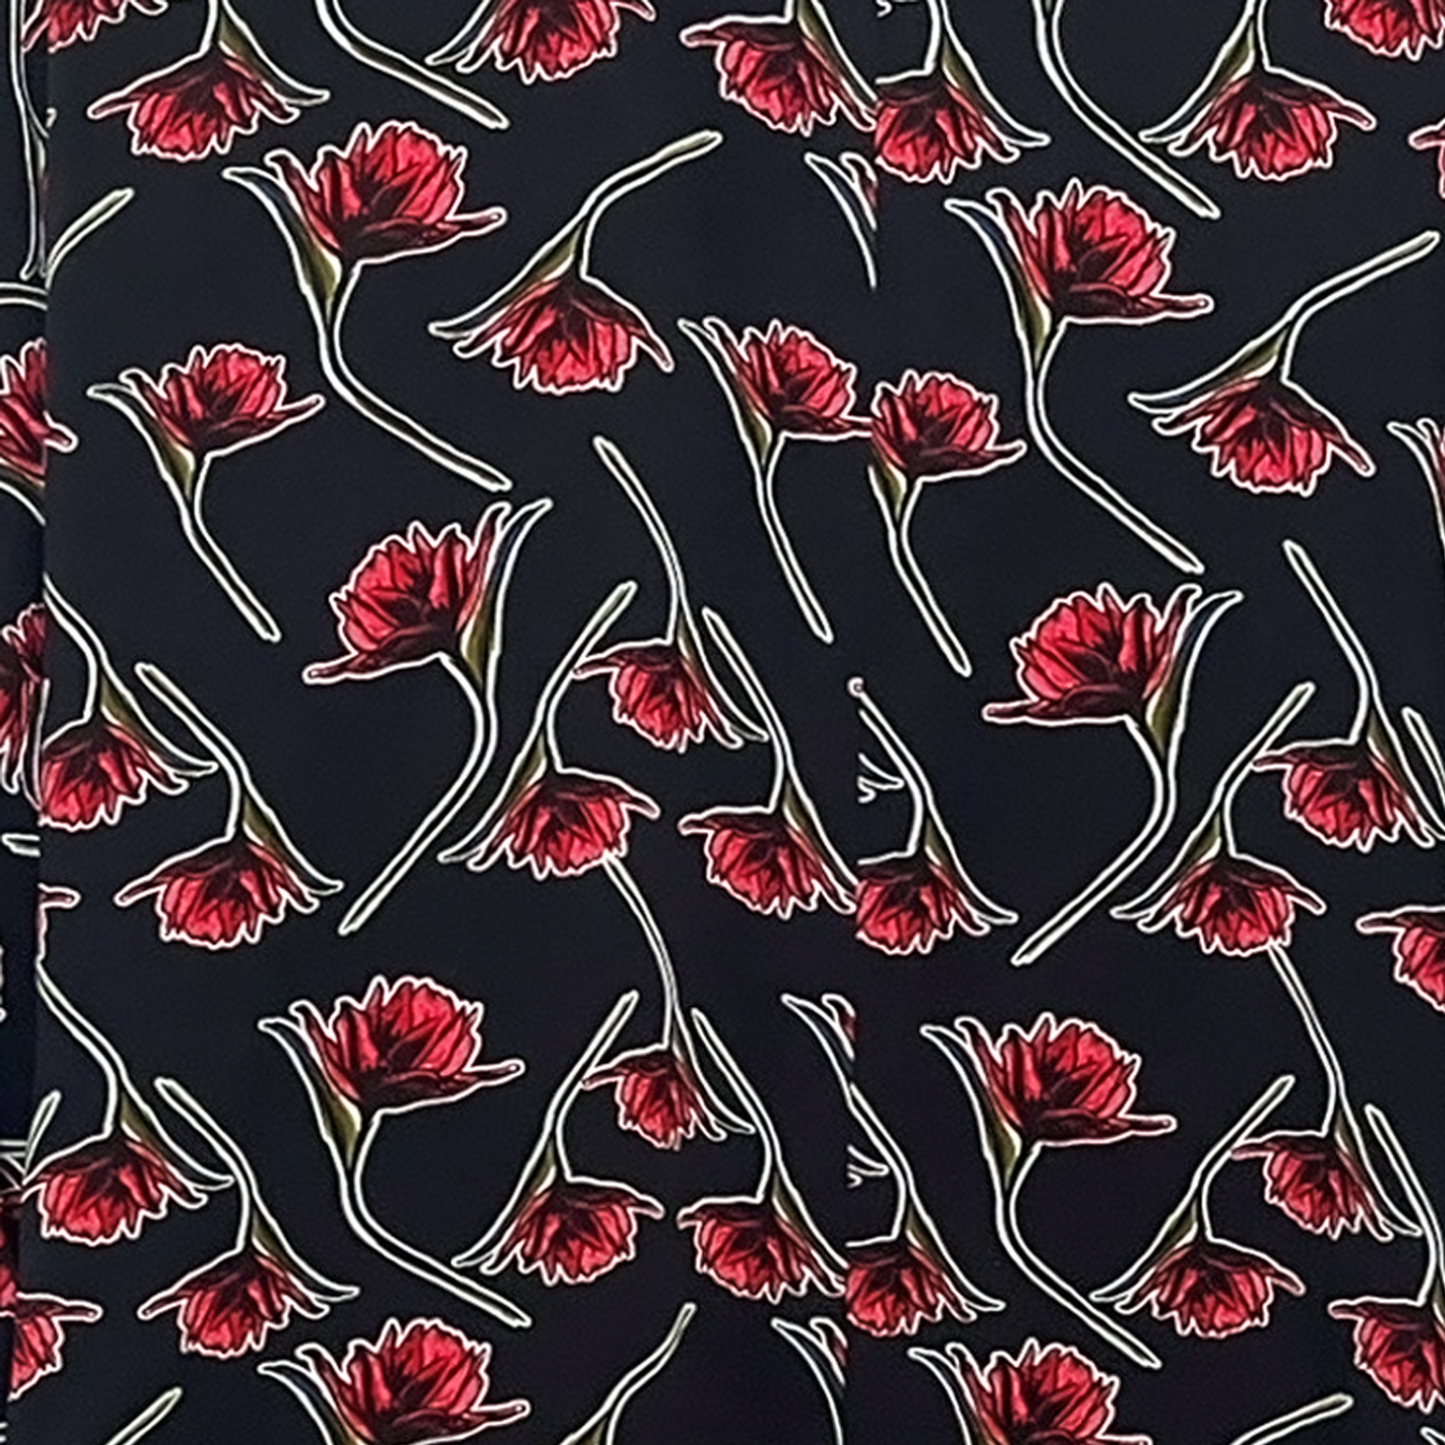 The Black Dahlia Kimono - Size Medium by Skye De La Rosa